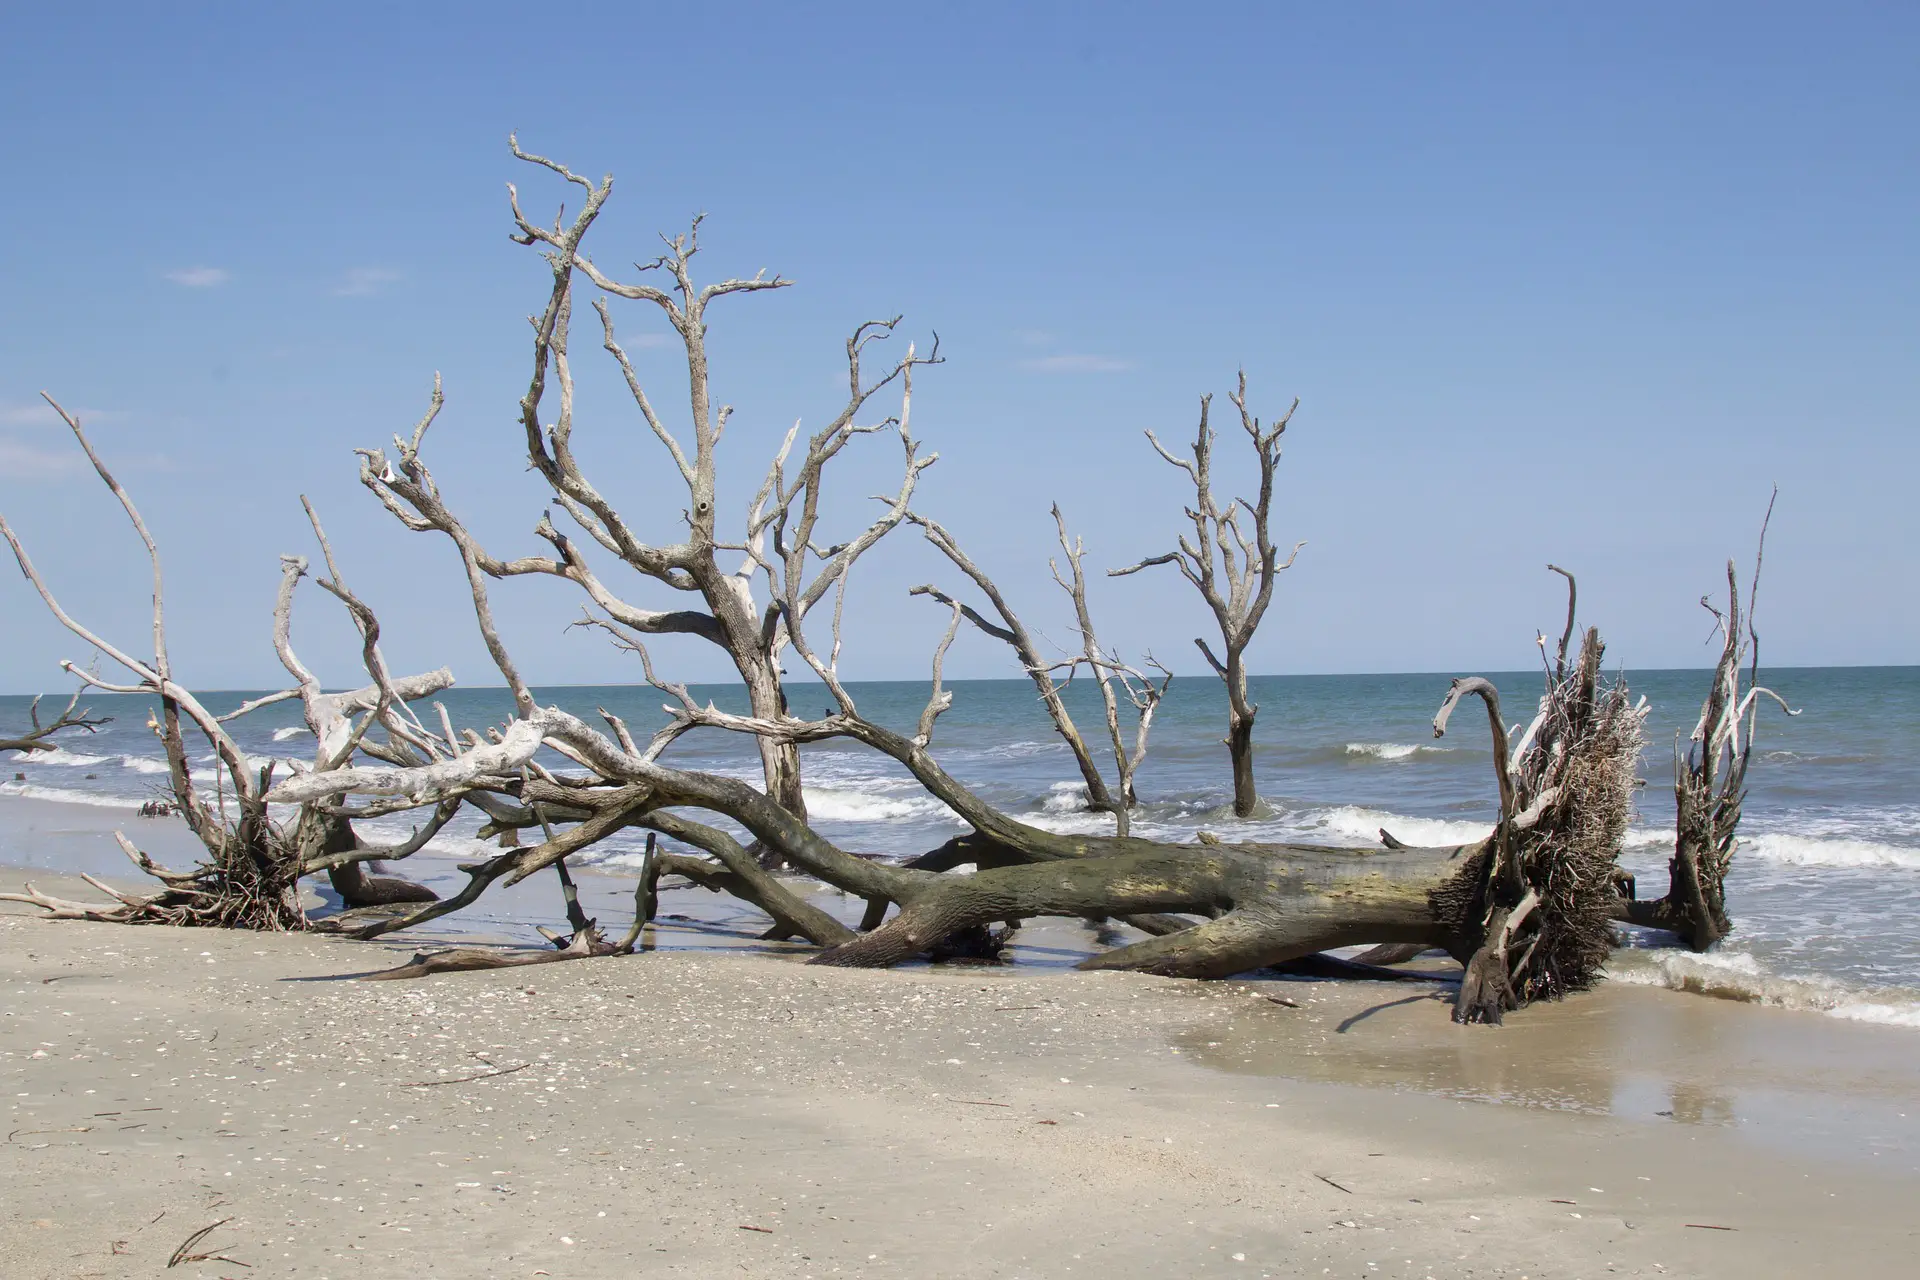 Explore South Carolina state park beaches